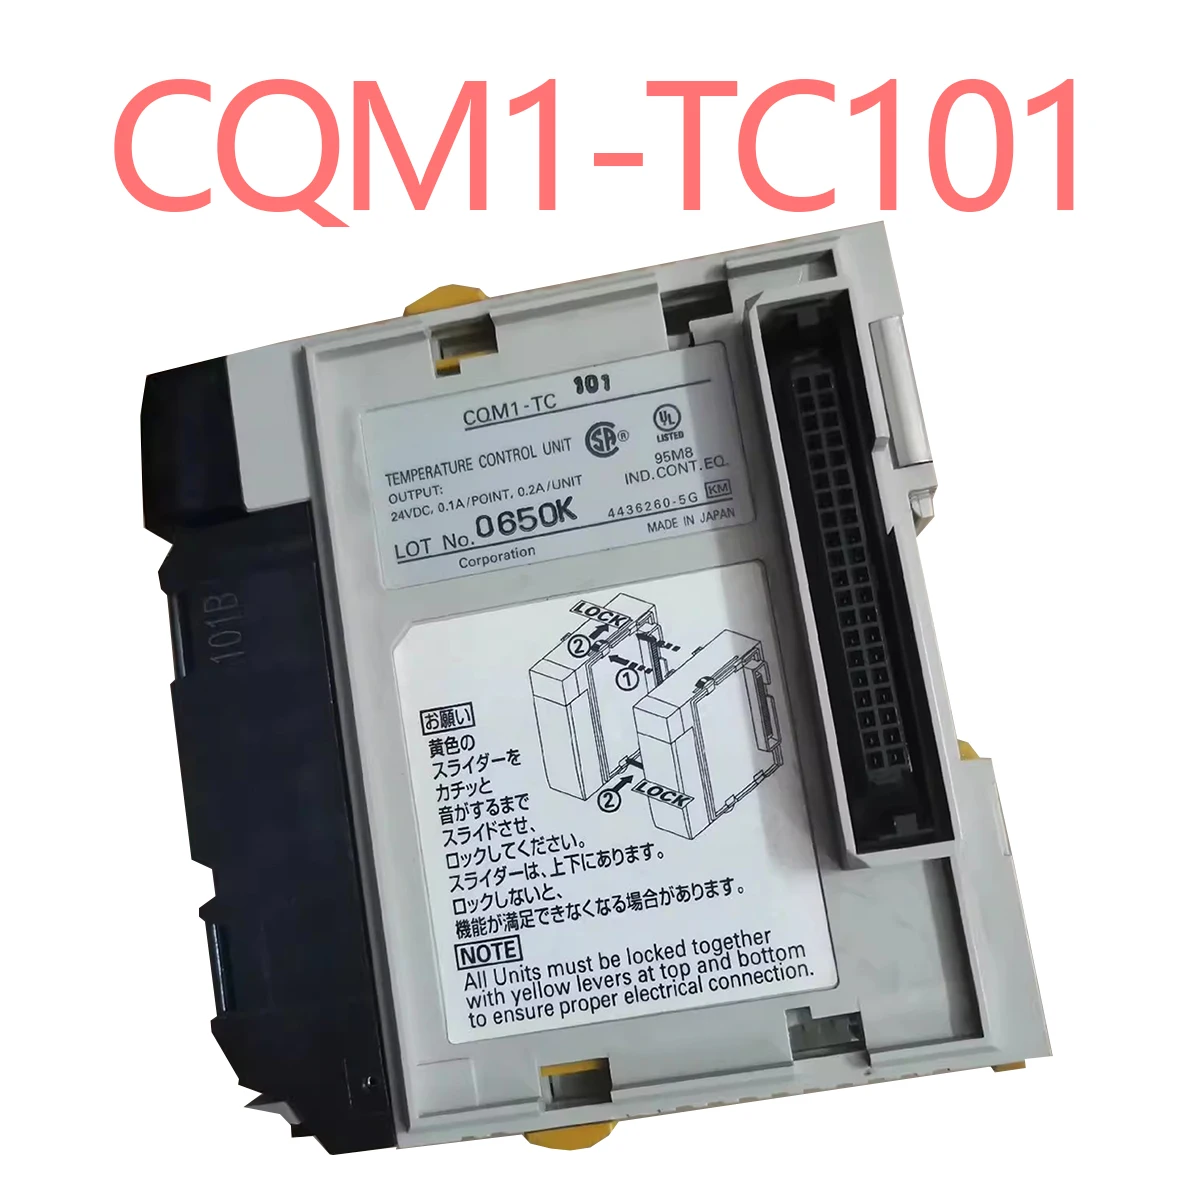 

100%NEW ORIGINAL 1 Year Warranty Programmable Controller CQM1-TC101 Q61P Q312B QY40P QX40 Q03UDECPU QC12B Q68B Q64AD